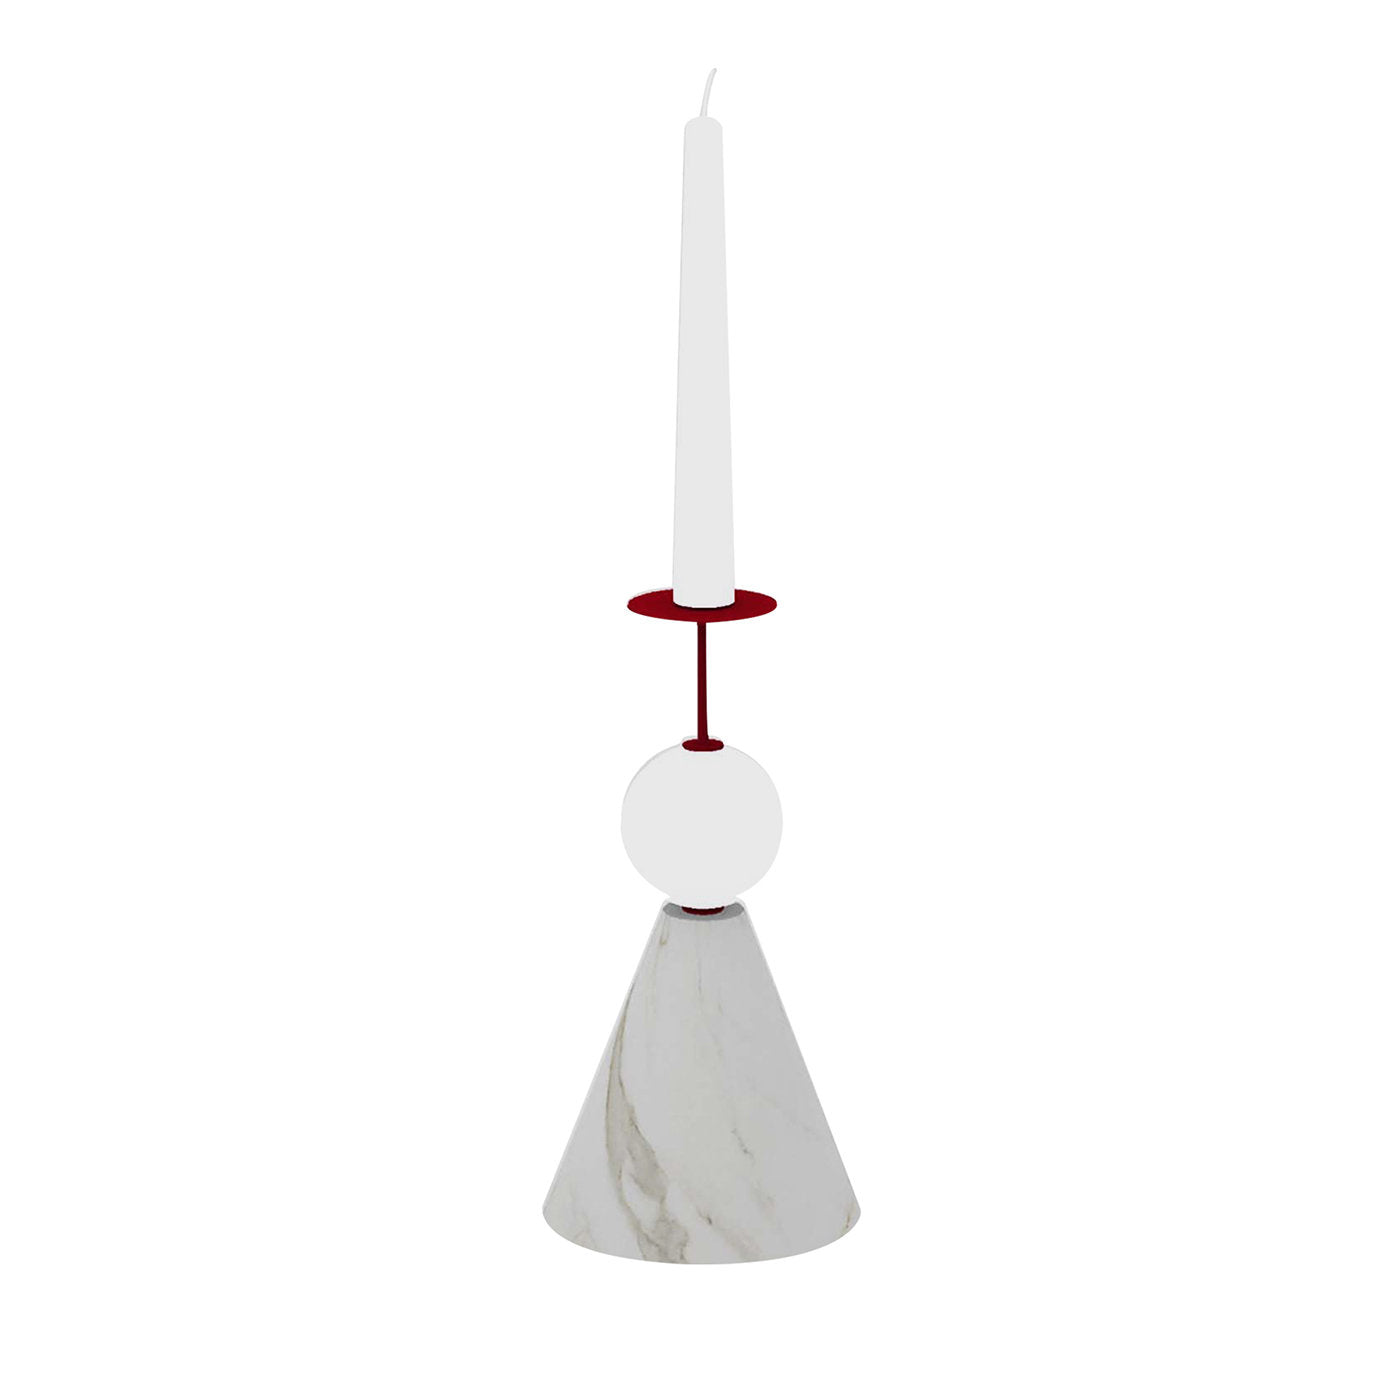 Raccontami Weiß Carrara, Rot und Weiß Kerzenständer - Hauptansicht